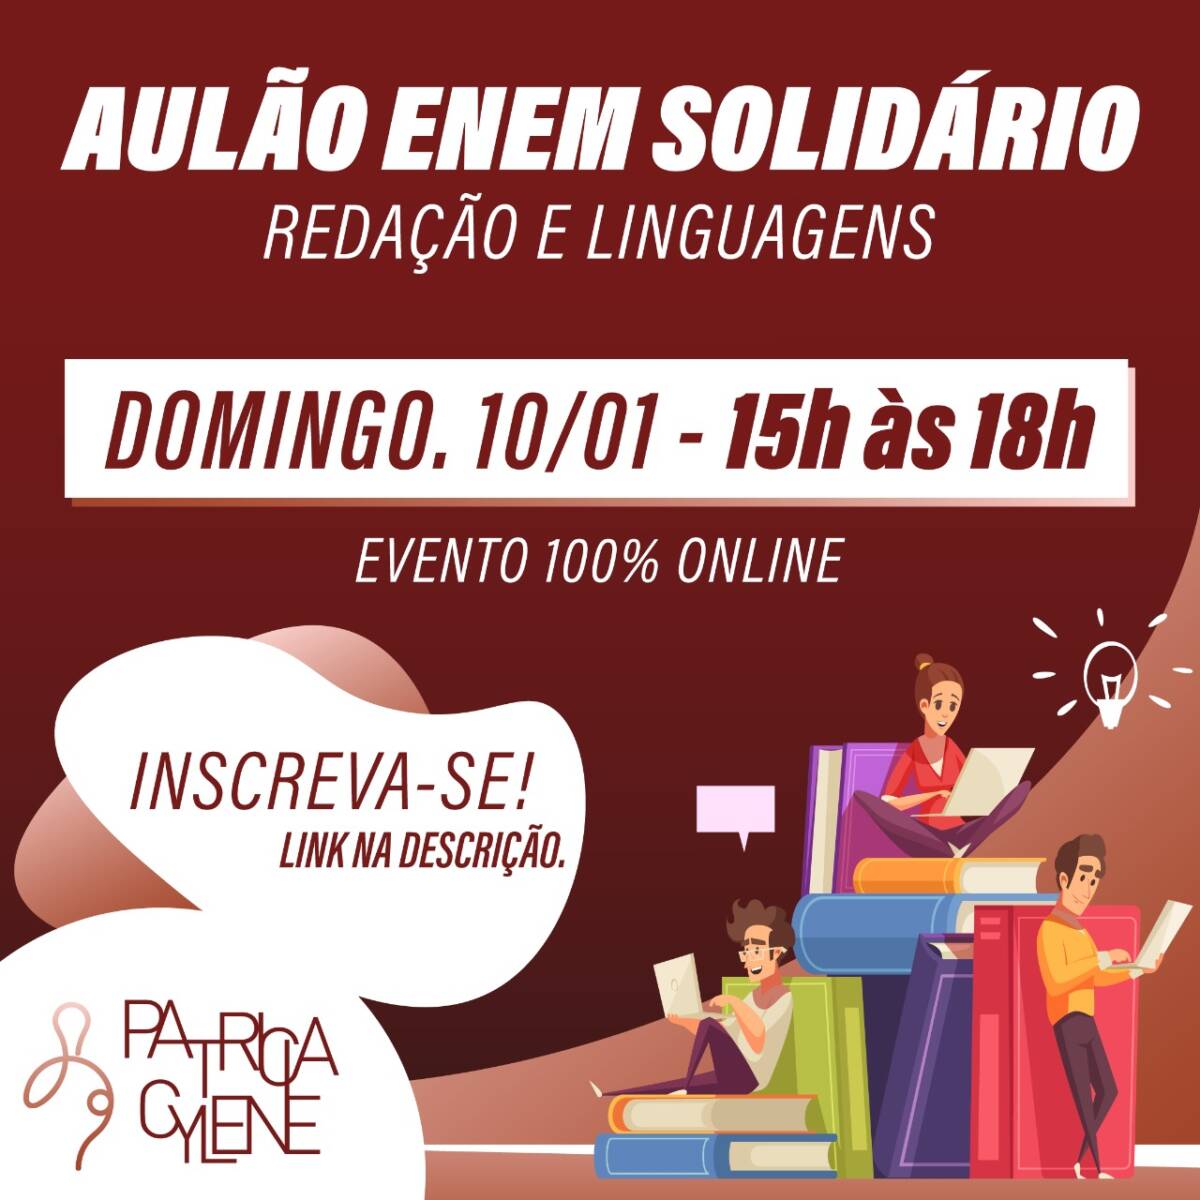 Aulão Enem Solidário – Redação e Linguagens